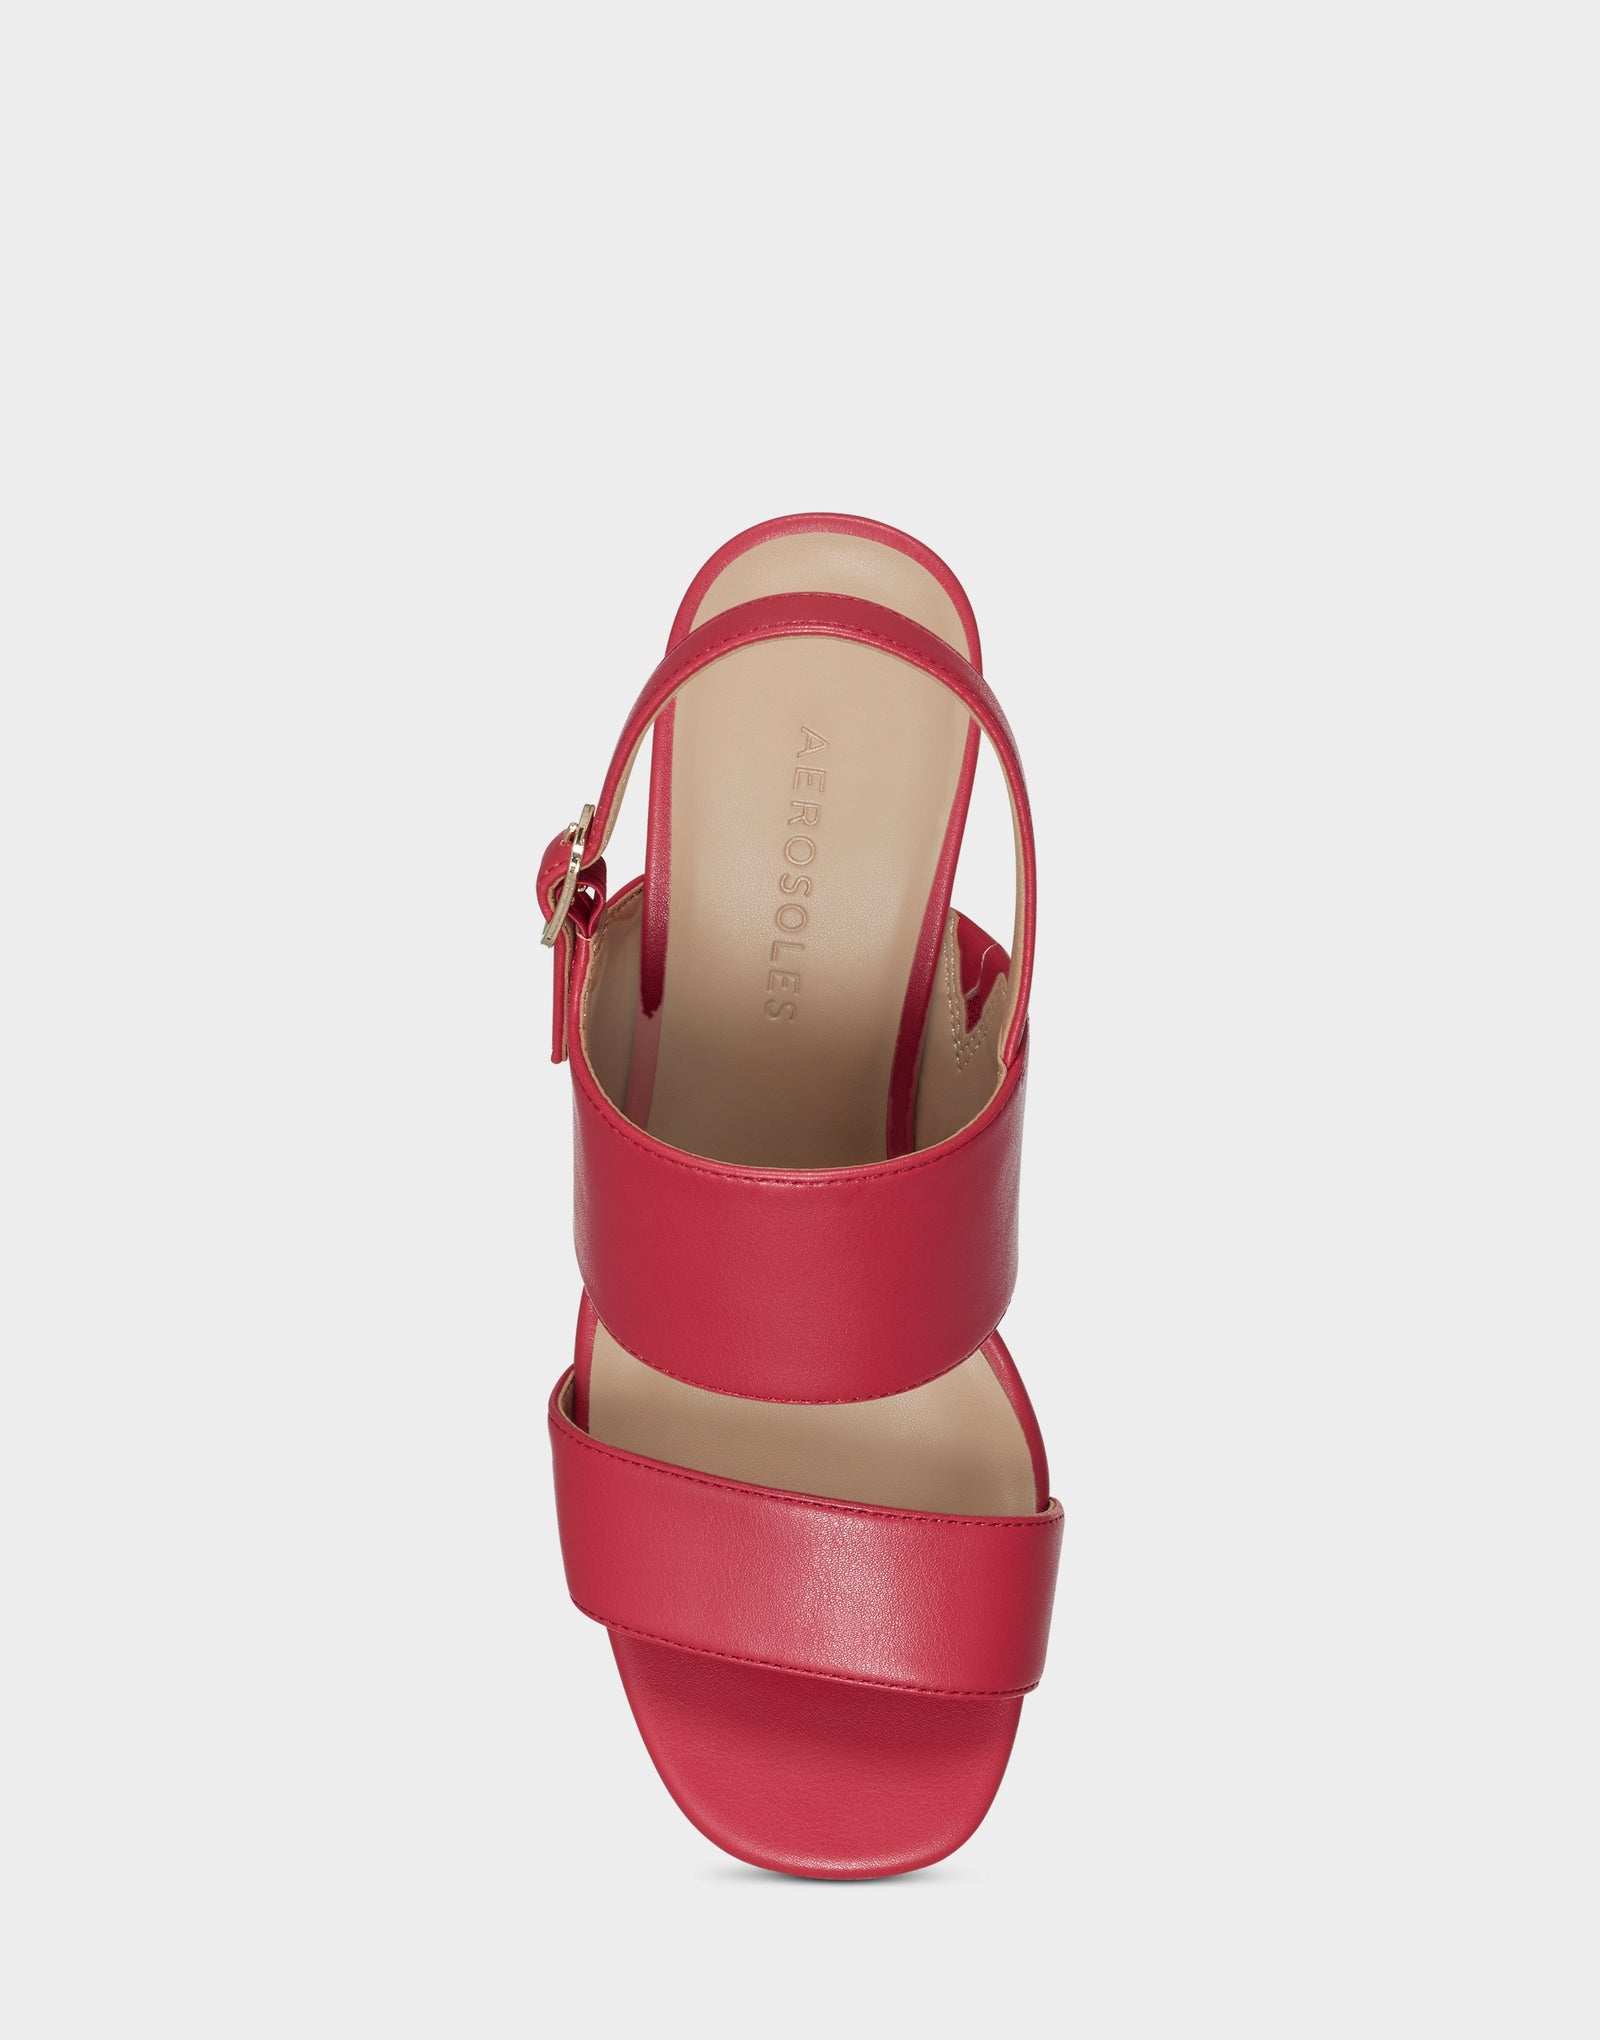 Women's Sandal in Red